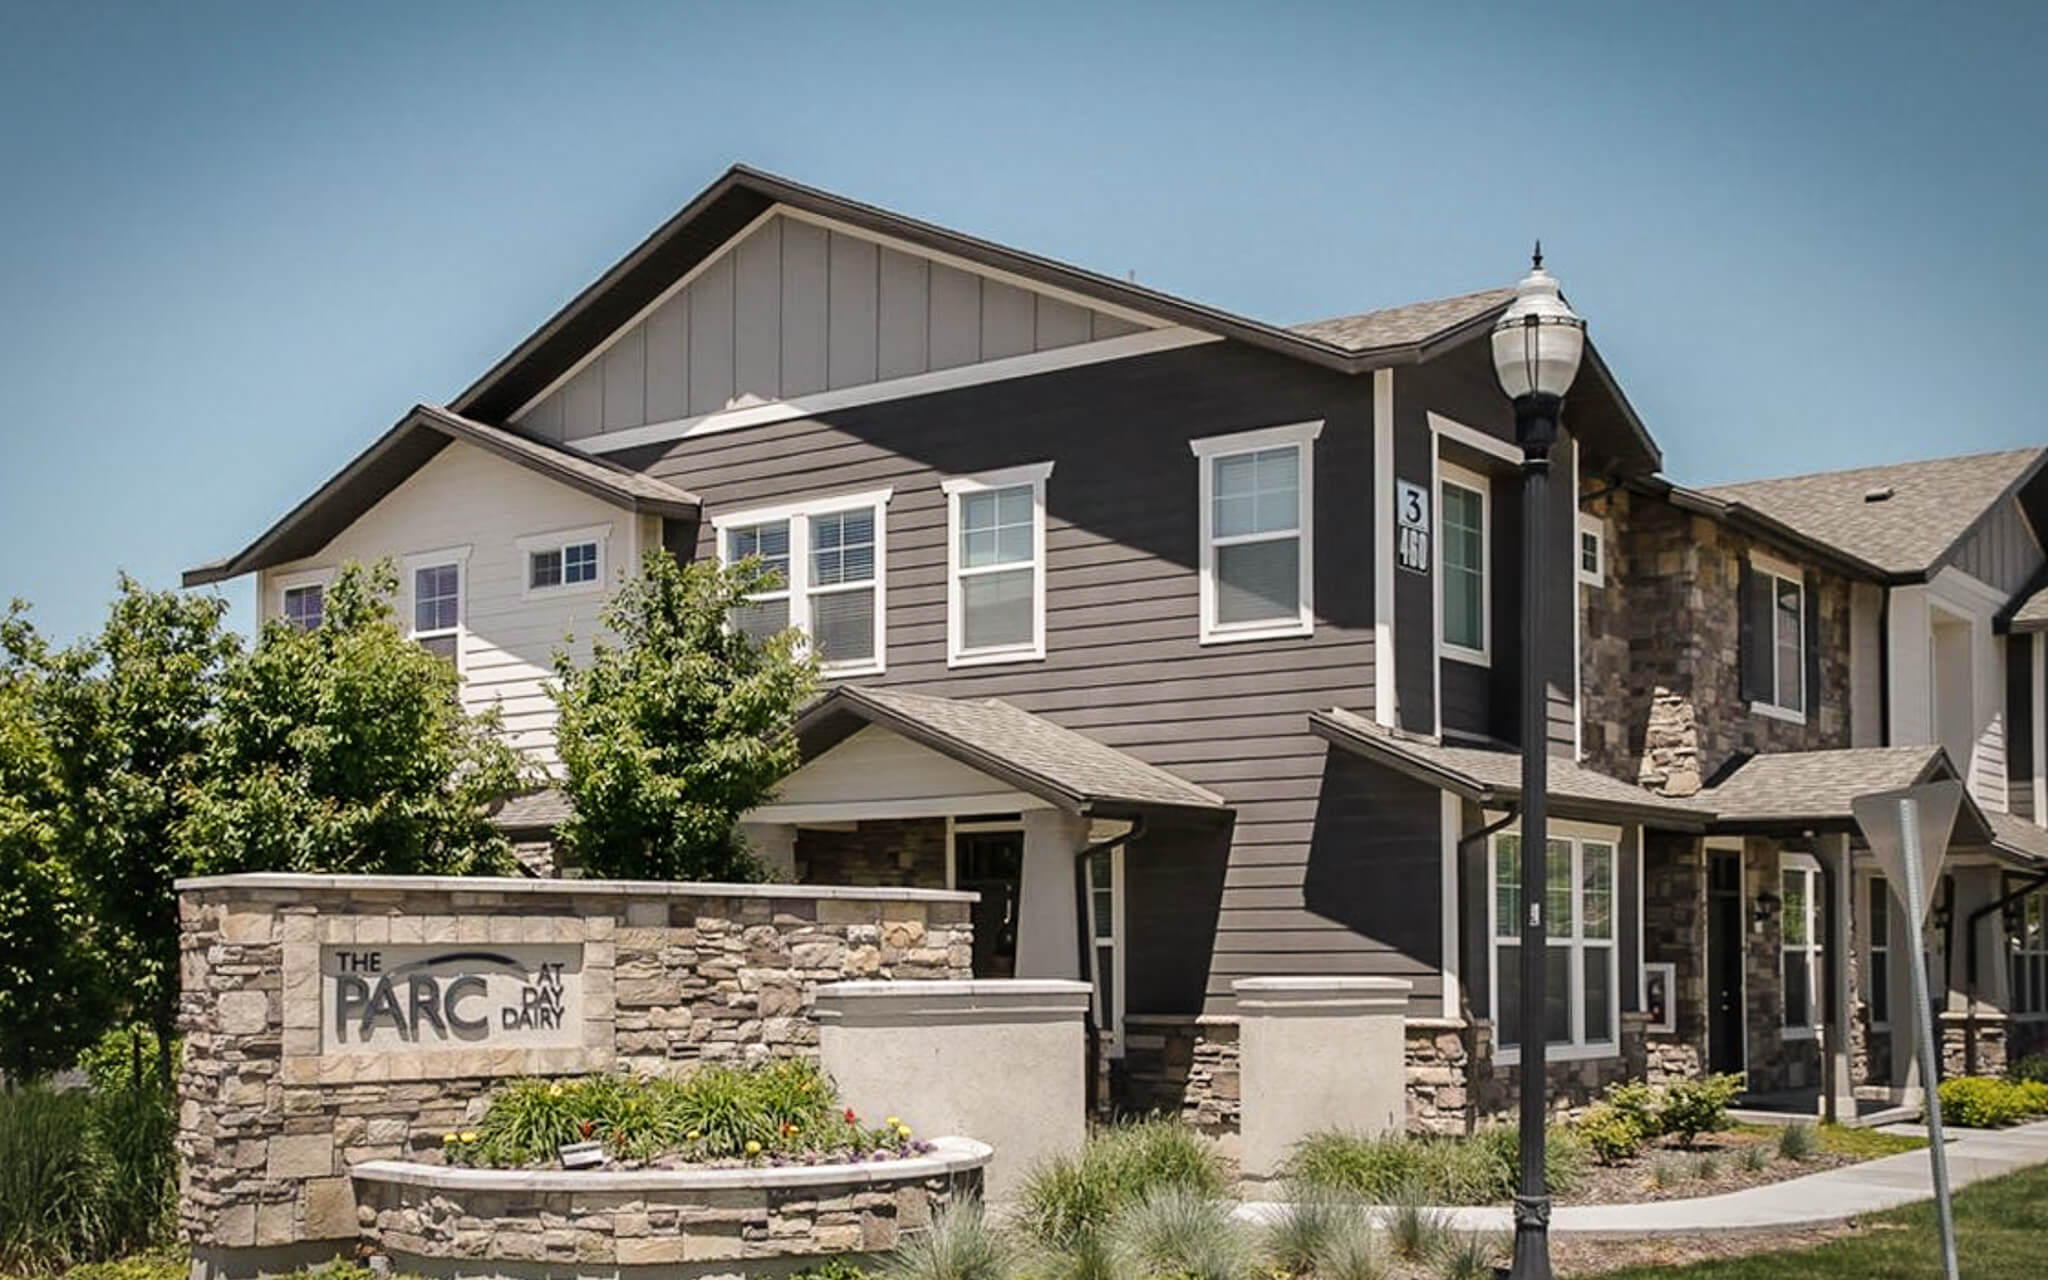 Paragon Corporate Housing - Parc at Day Dairy Apartments - Draper Utah